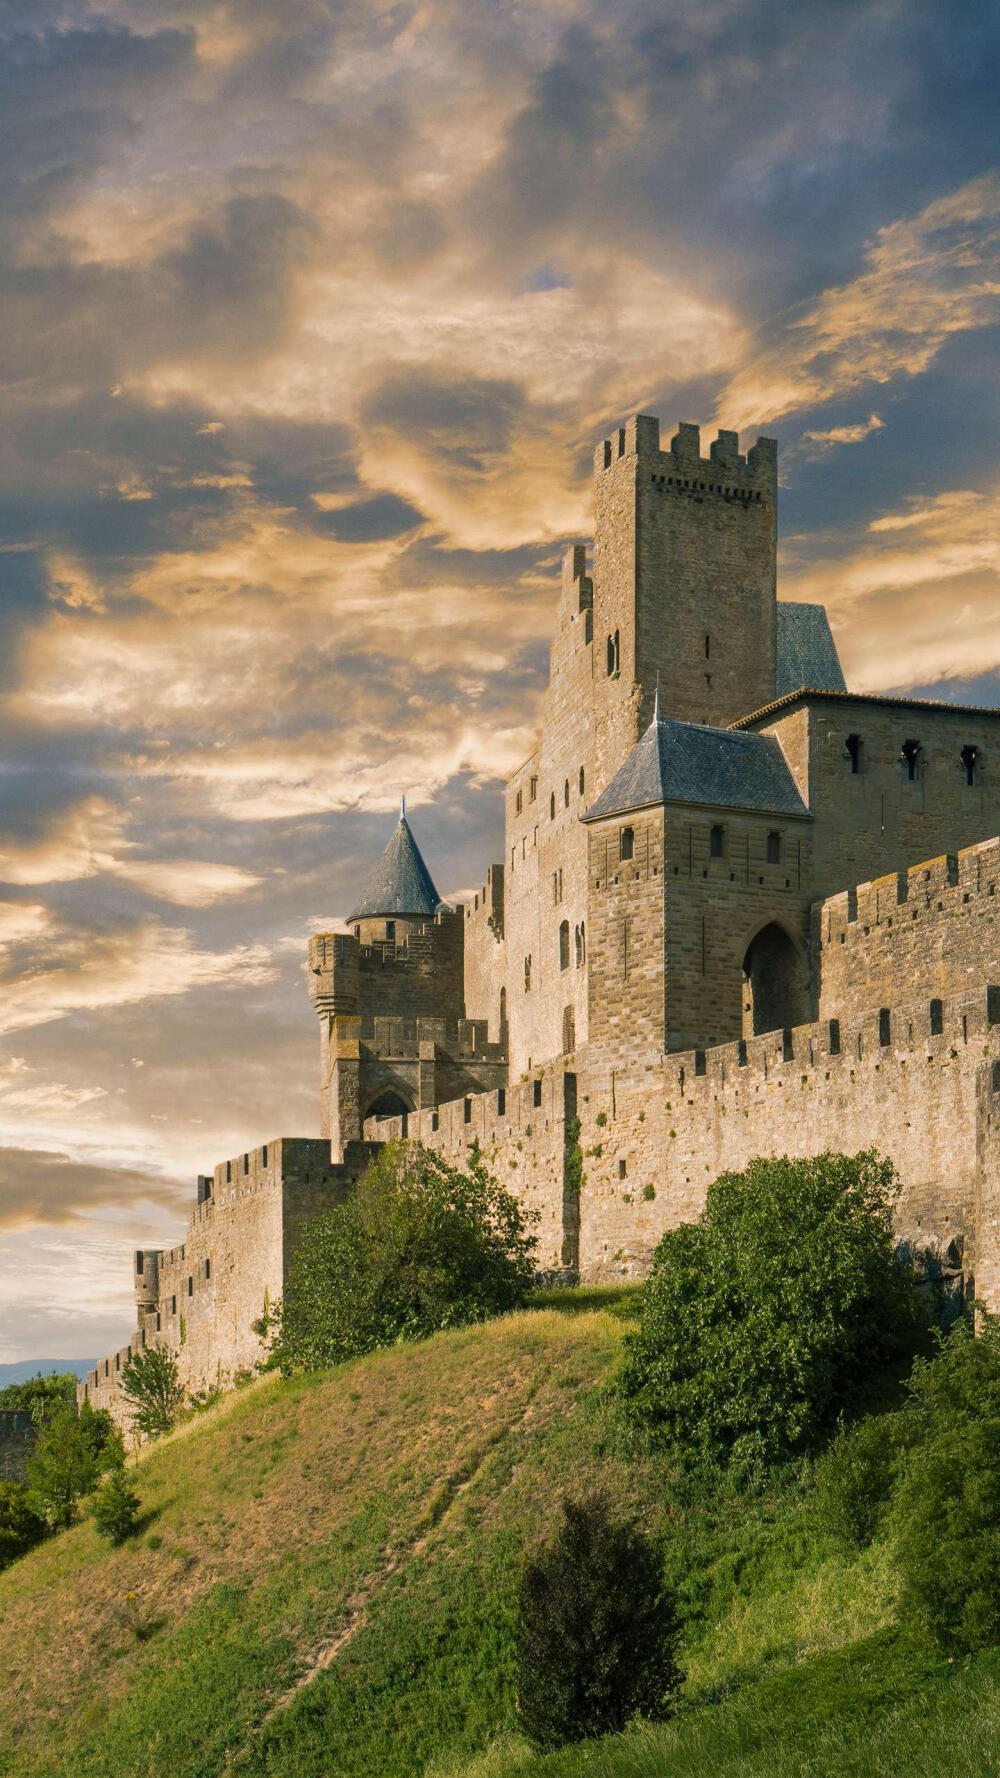 一座典型的中世纪欧洲城堡,屋身呈圆柱形,屋顶呈圆锥形,特别引人注目